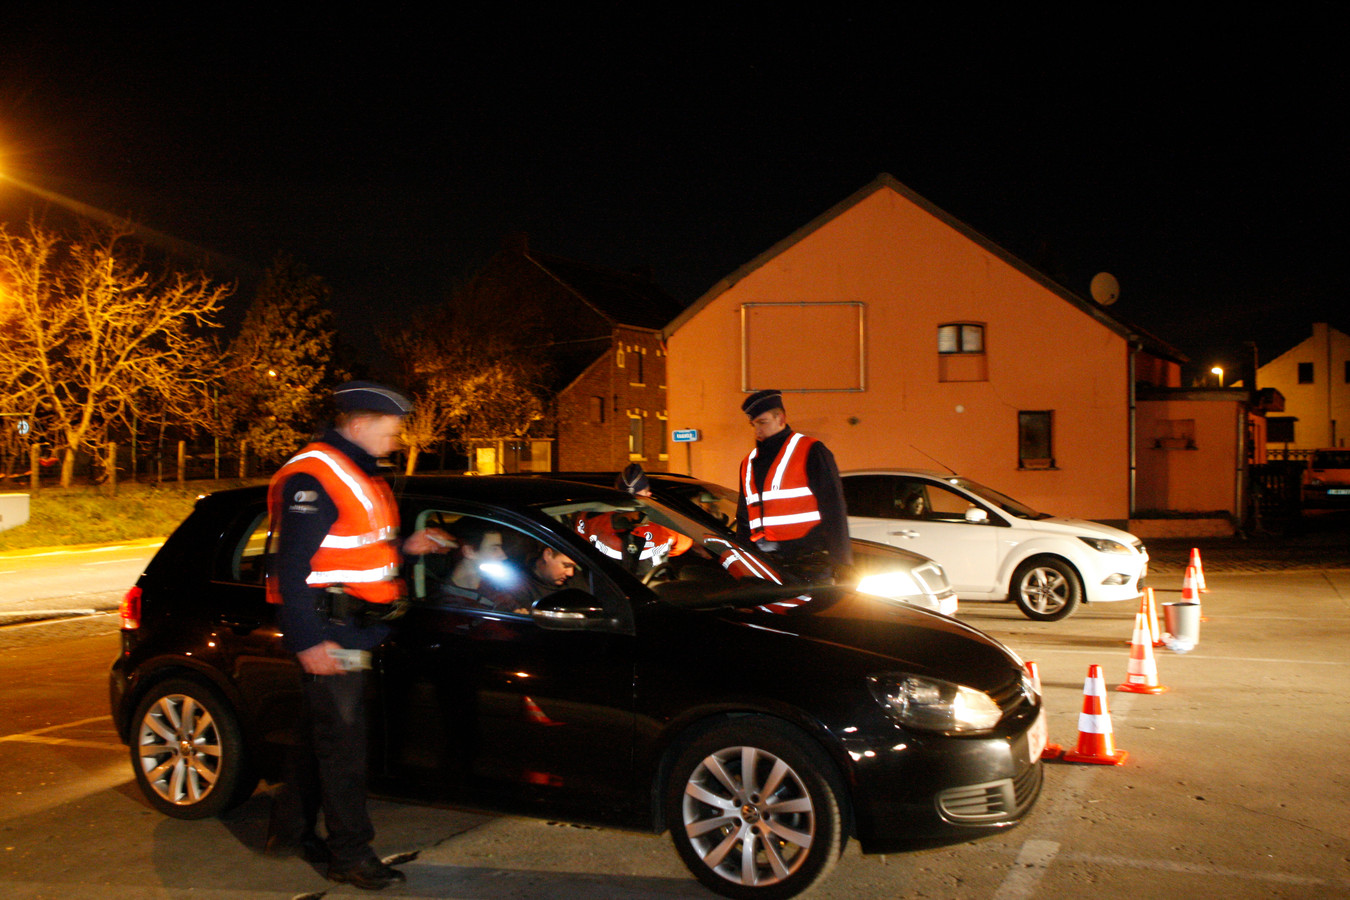 De politie hield een alcohol- en drugcontrole in Scherpenheuvel-Zichem.